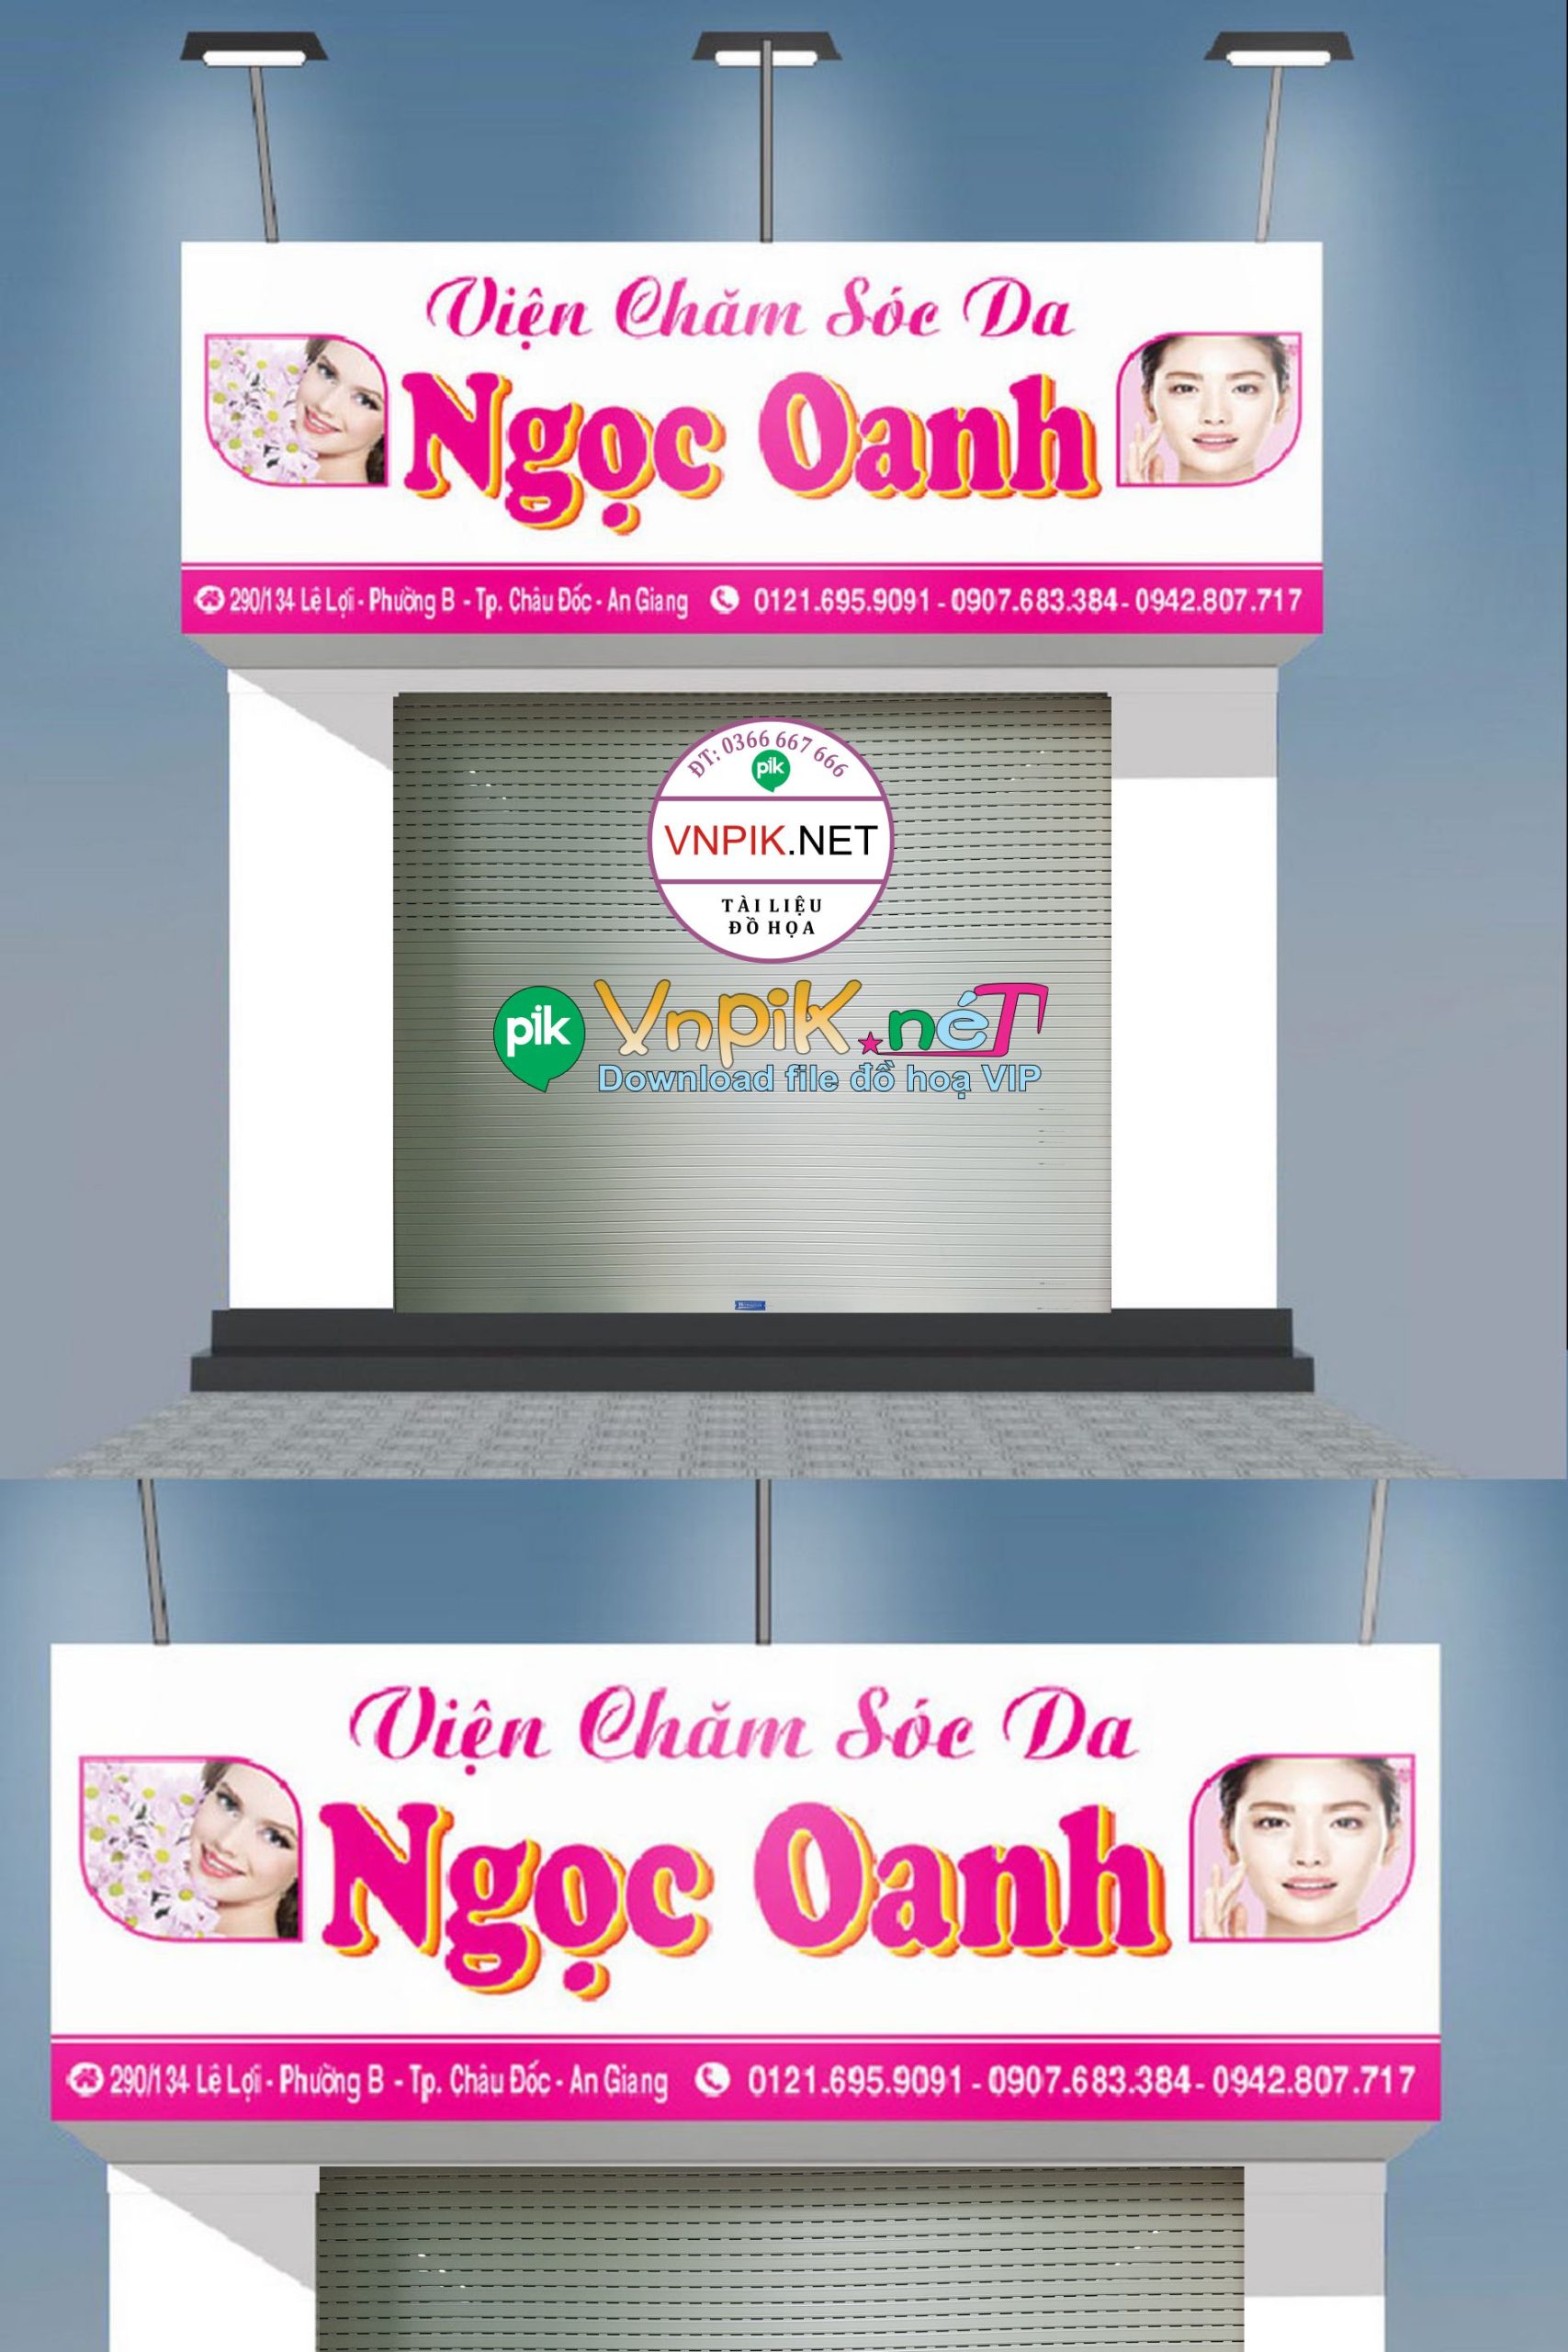 Market biển quảng cáo viện chăm sóc da Ngọc Oanh file Corel